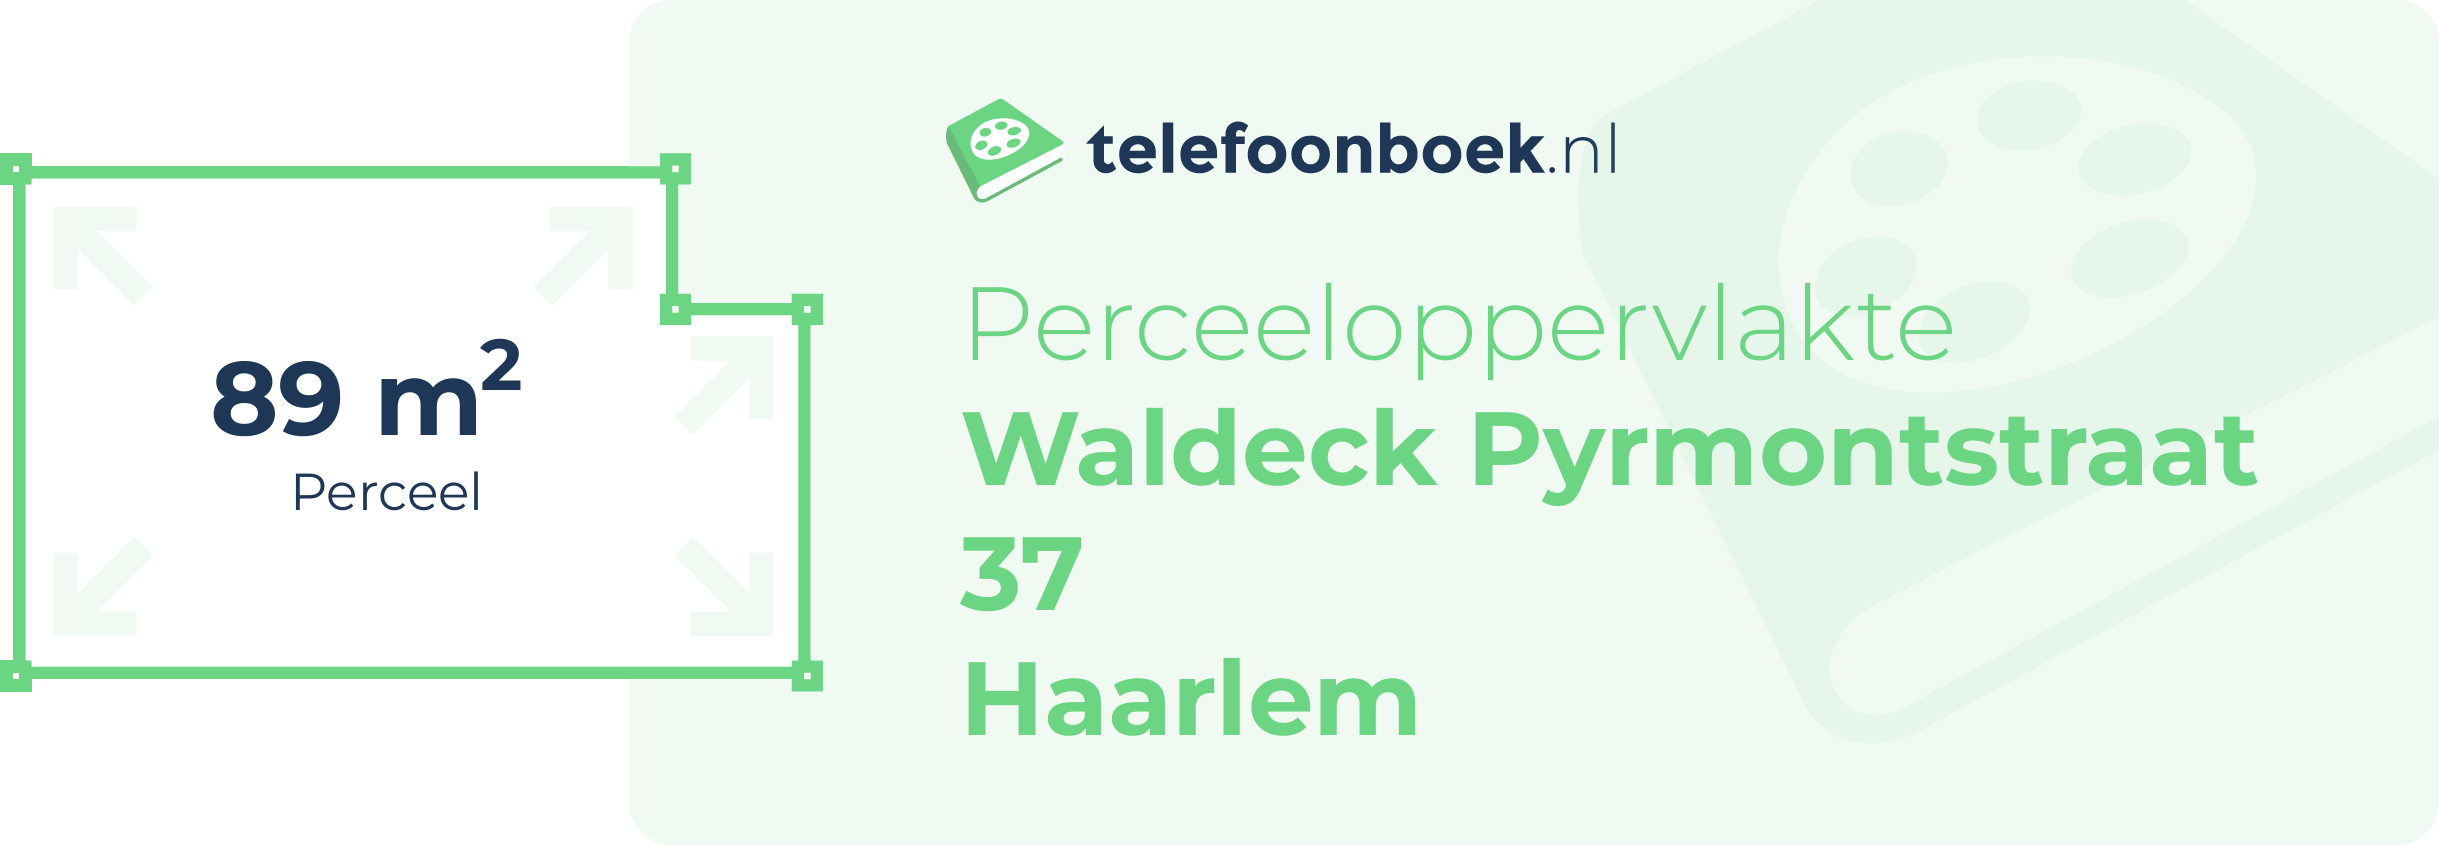 Perceeloppervlakte Waldeck Pyrmontstraat 37 Haarlem